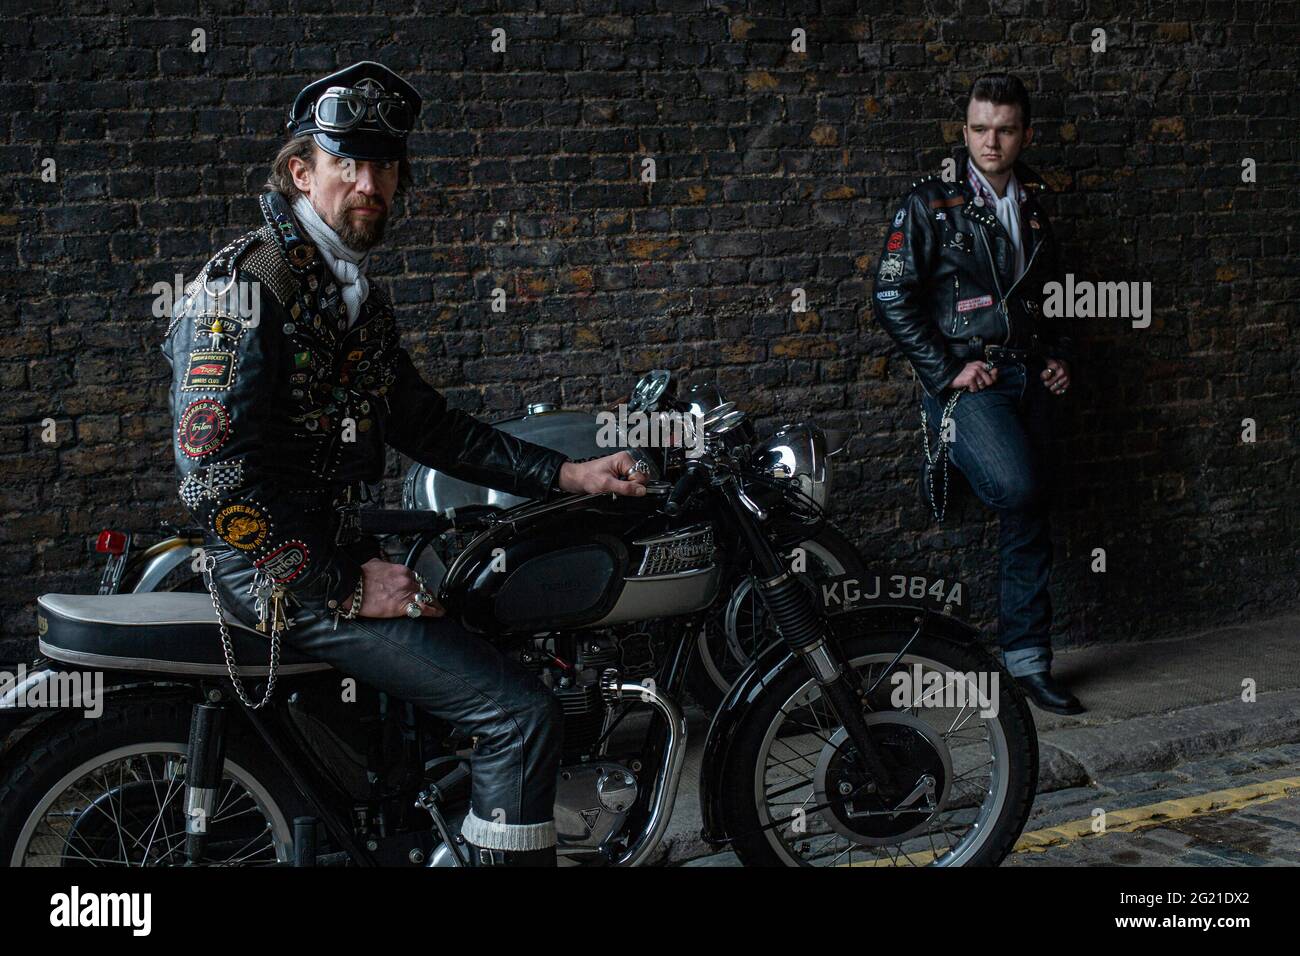 Zwei Rocker tragen schwarze Lederjacke mit Nieten, Patches und Abzeichen klassischen britischen Motorrad in London, Großbritannien bedeckt Stockfoto